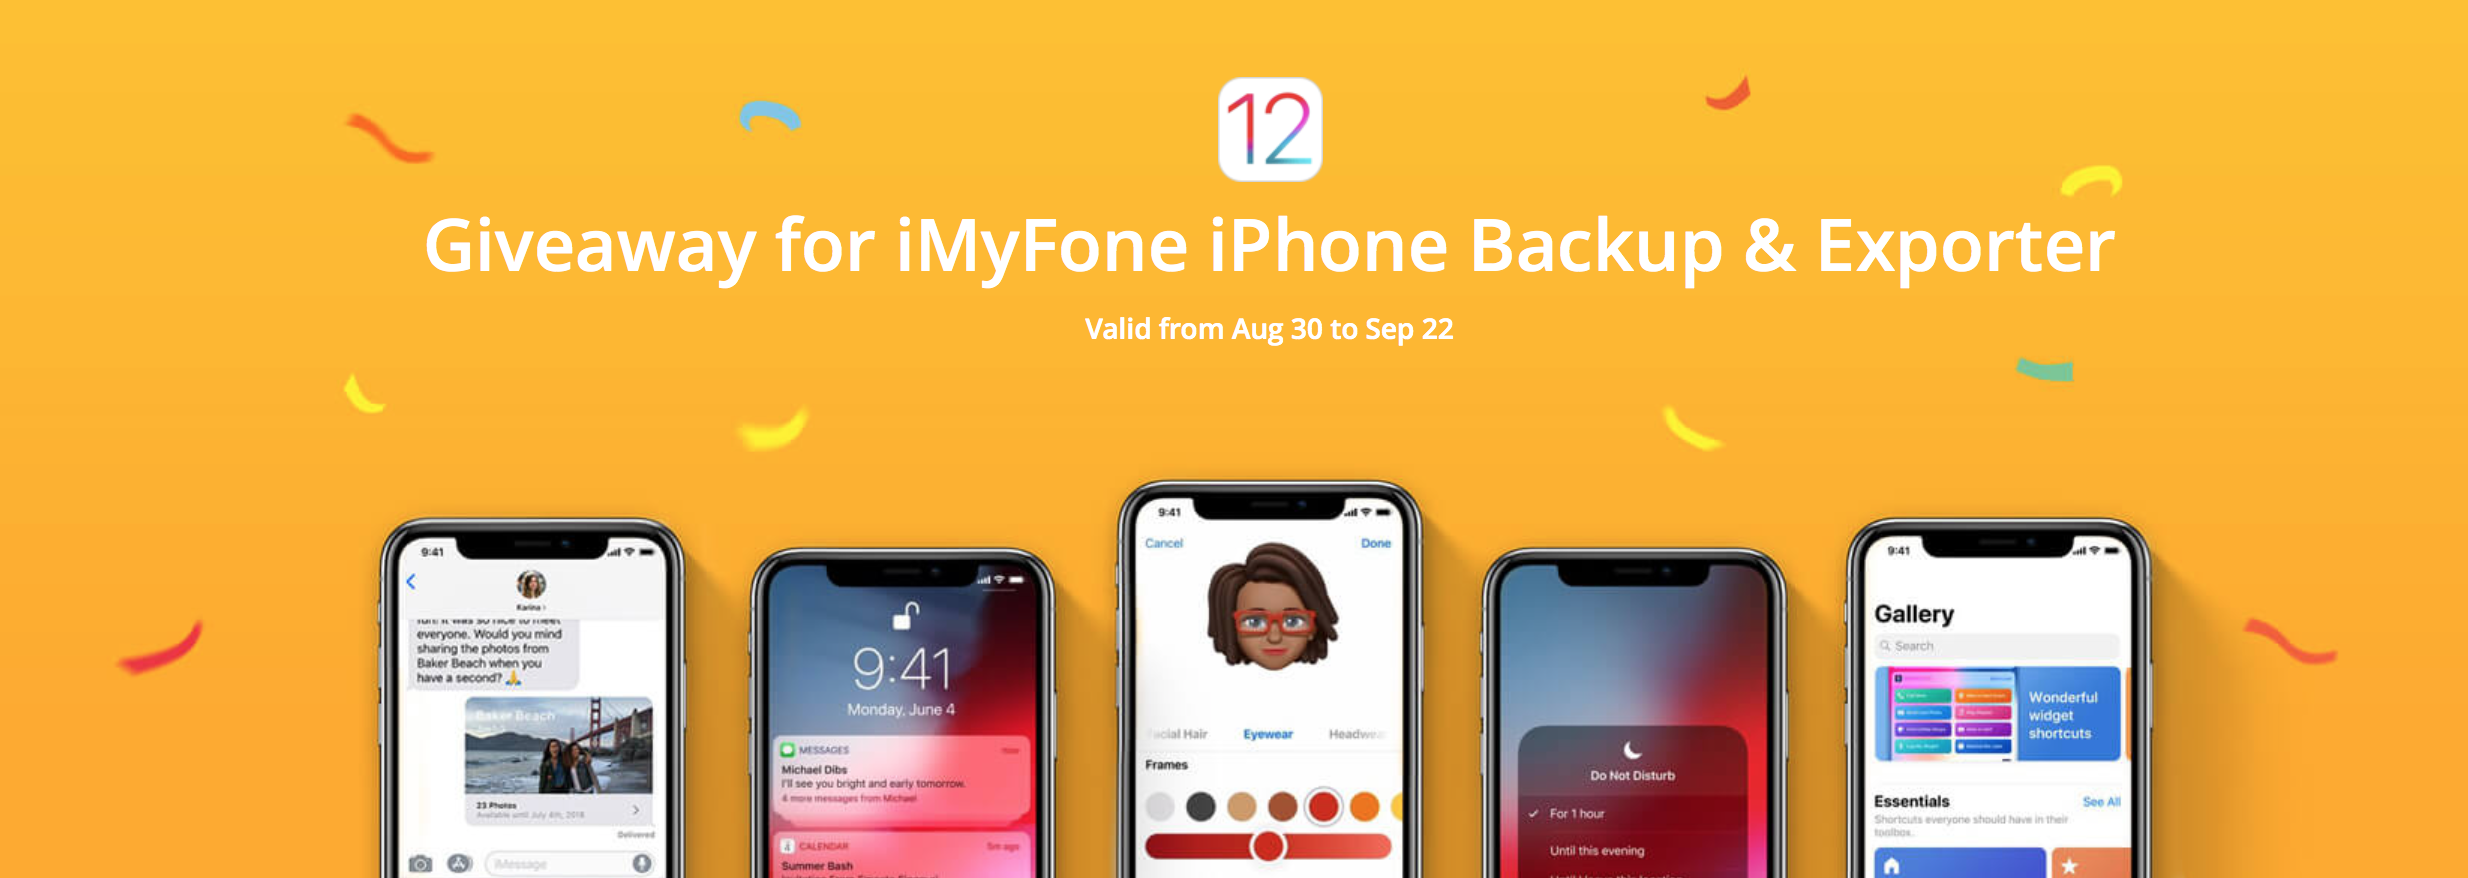 iMyFone iOS 12